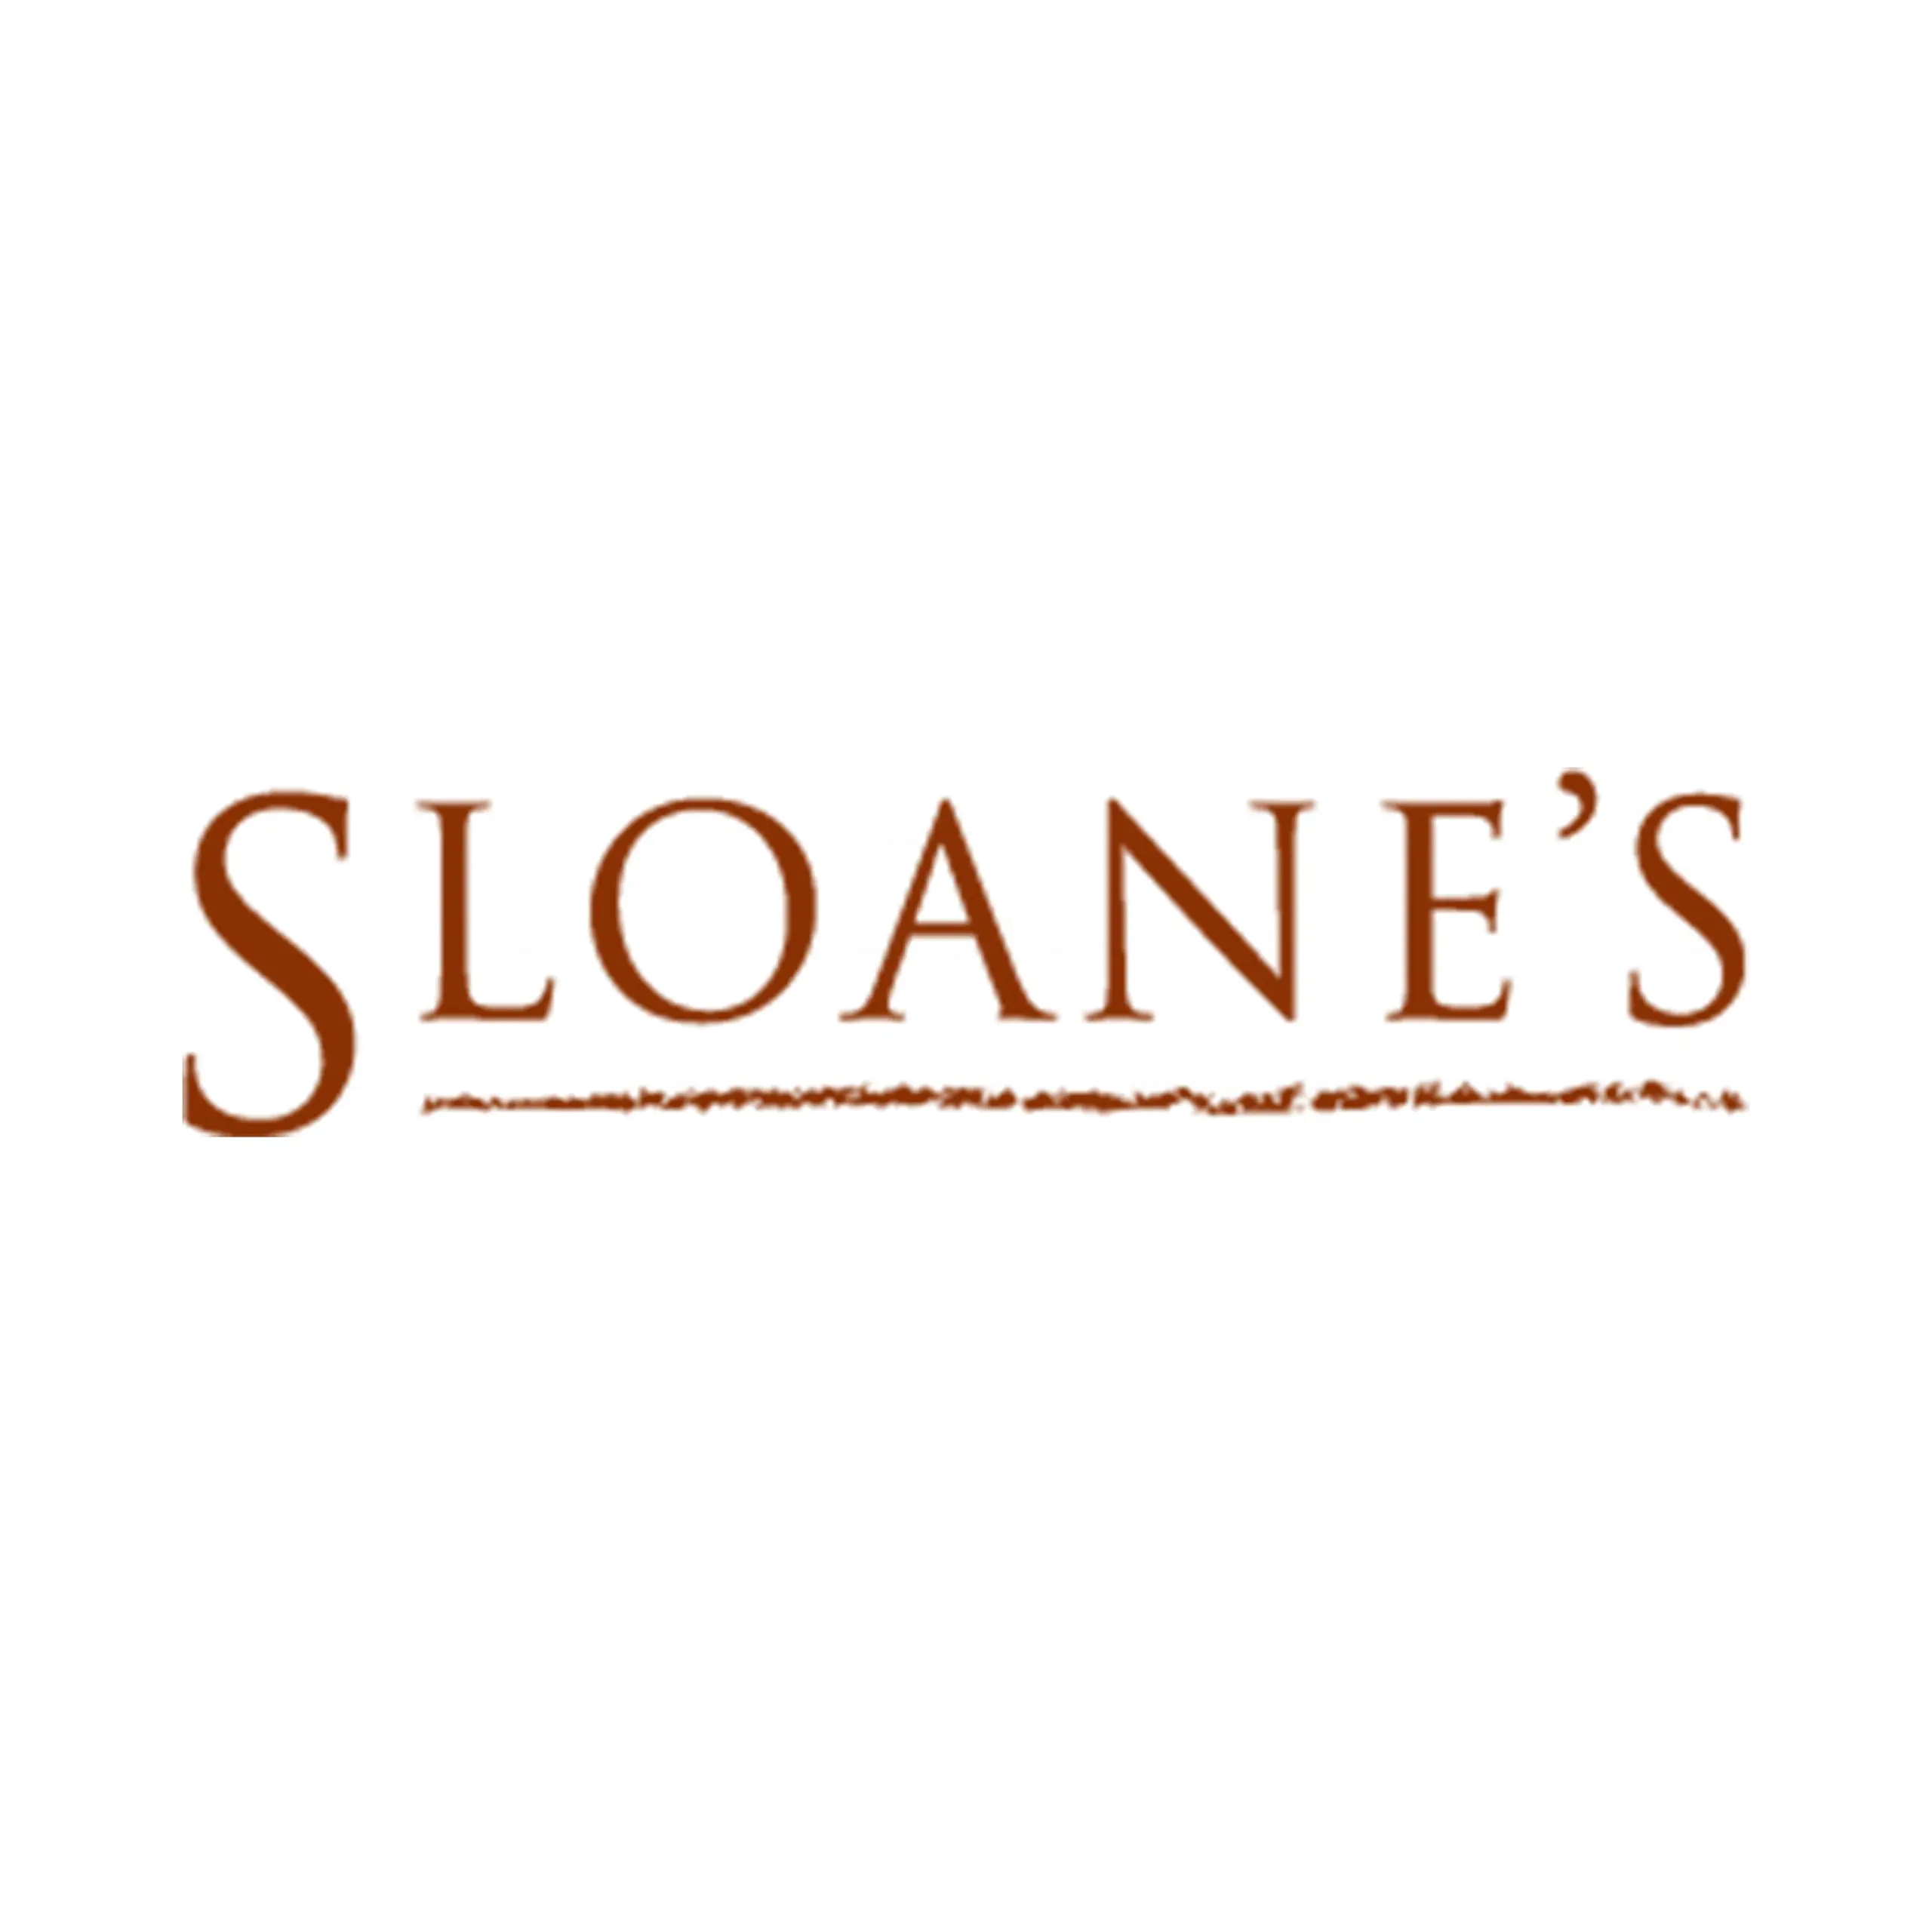 Sloane’s - Coming Soon in UAE